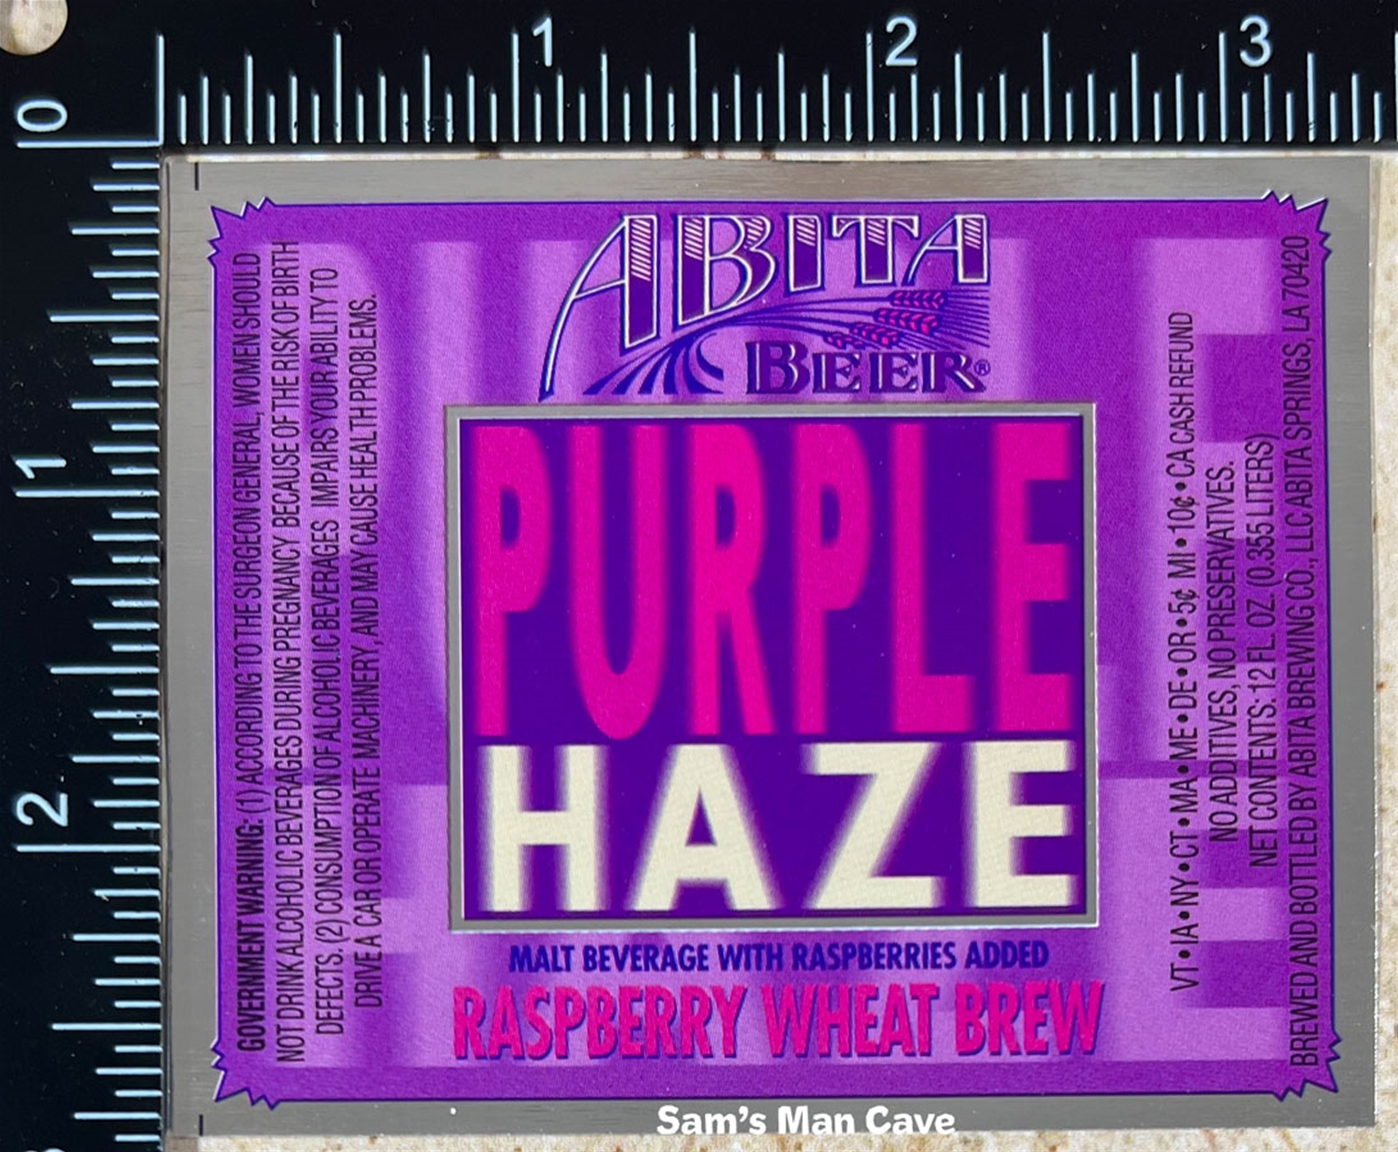 Abita Purple Haze Beer Label